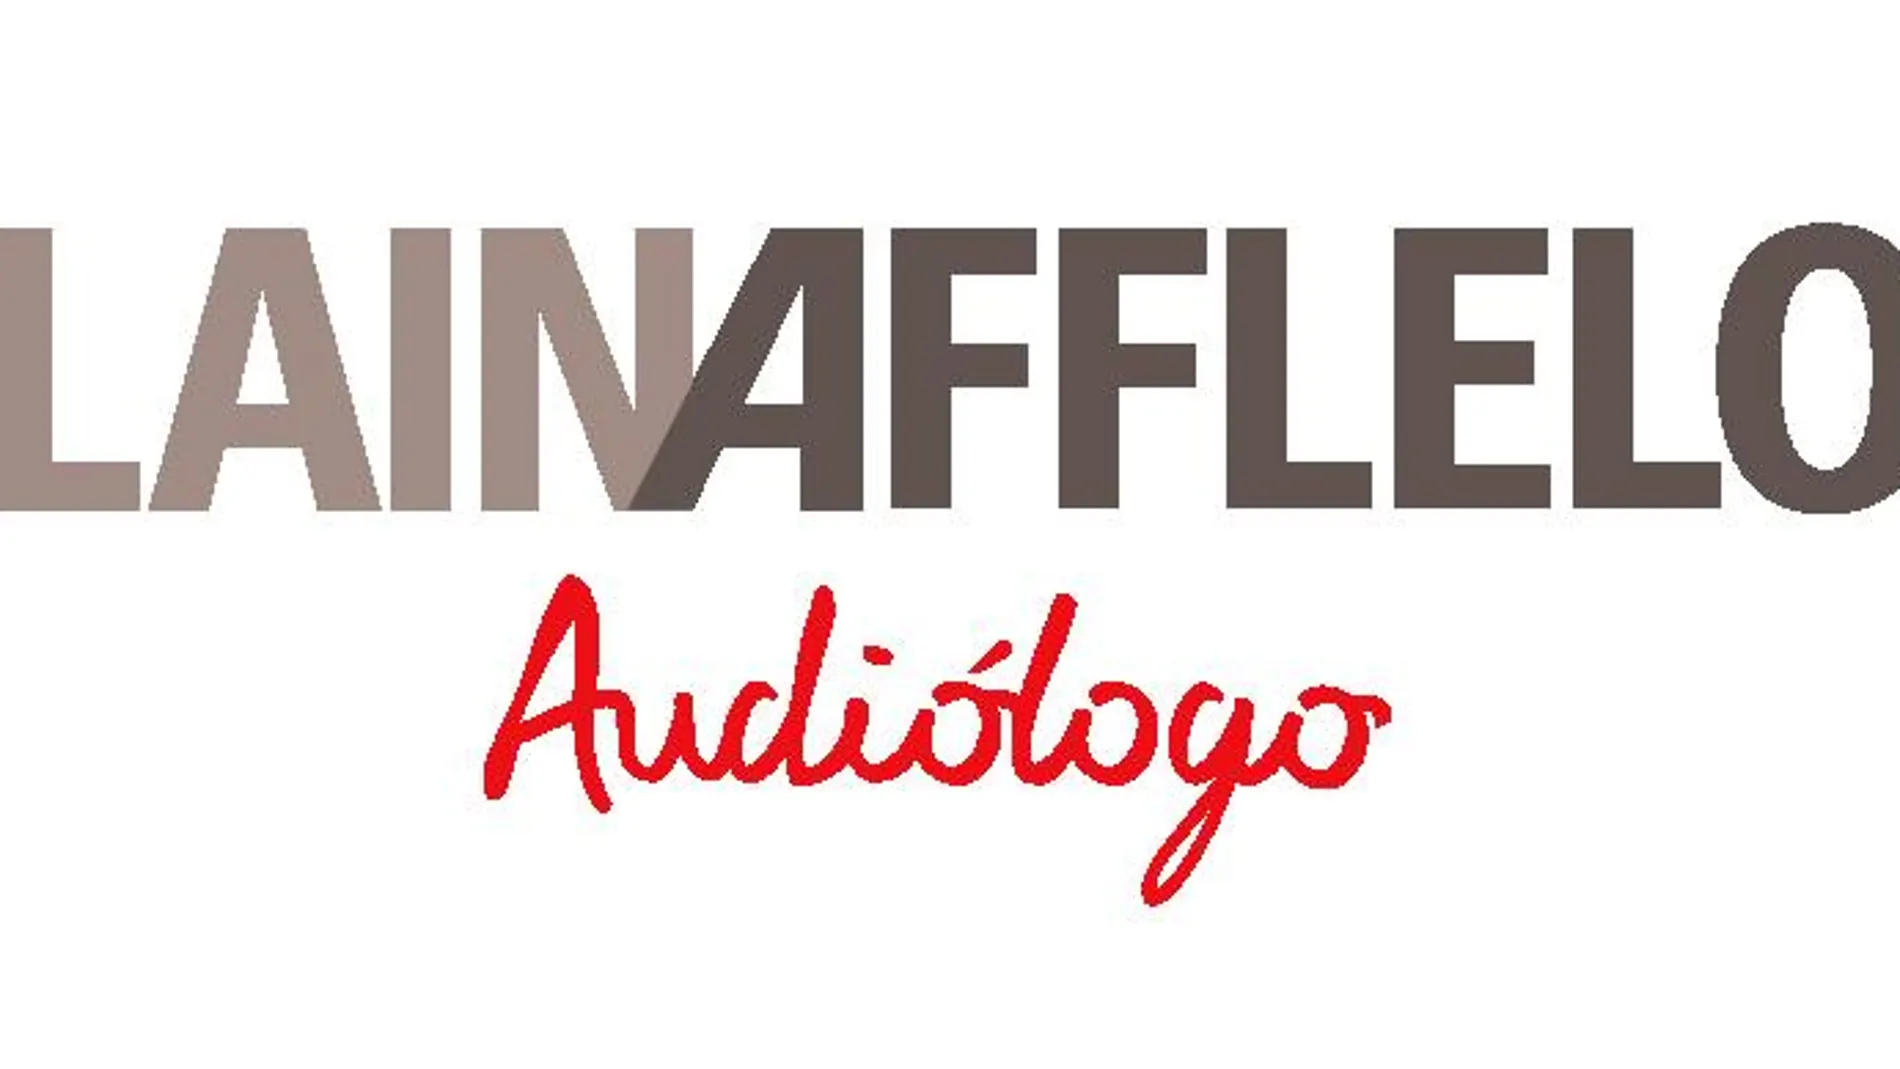 Este verano en los Centros Auditivos Alain Afflelou Audiólogo prueba gratis los audífonos más inteligentes